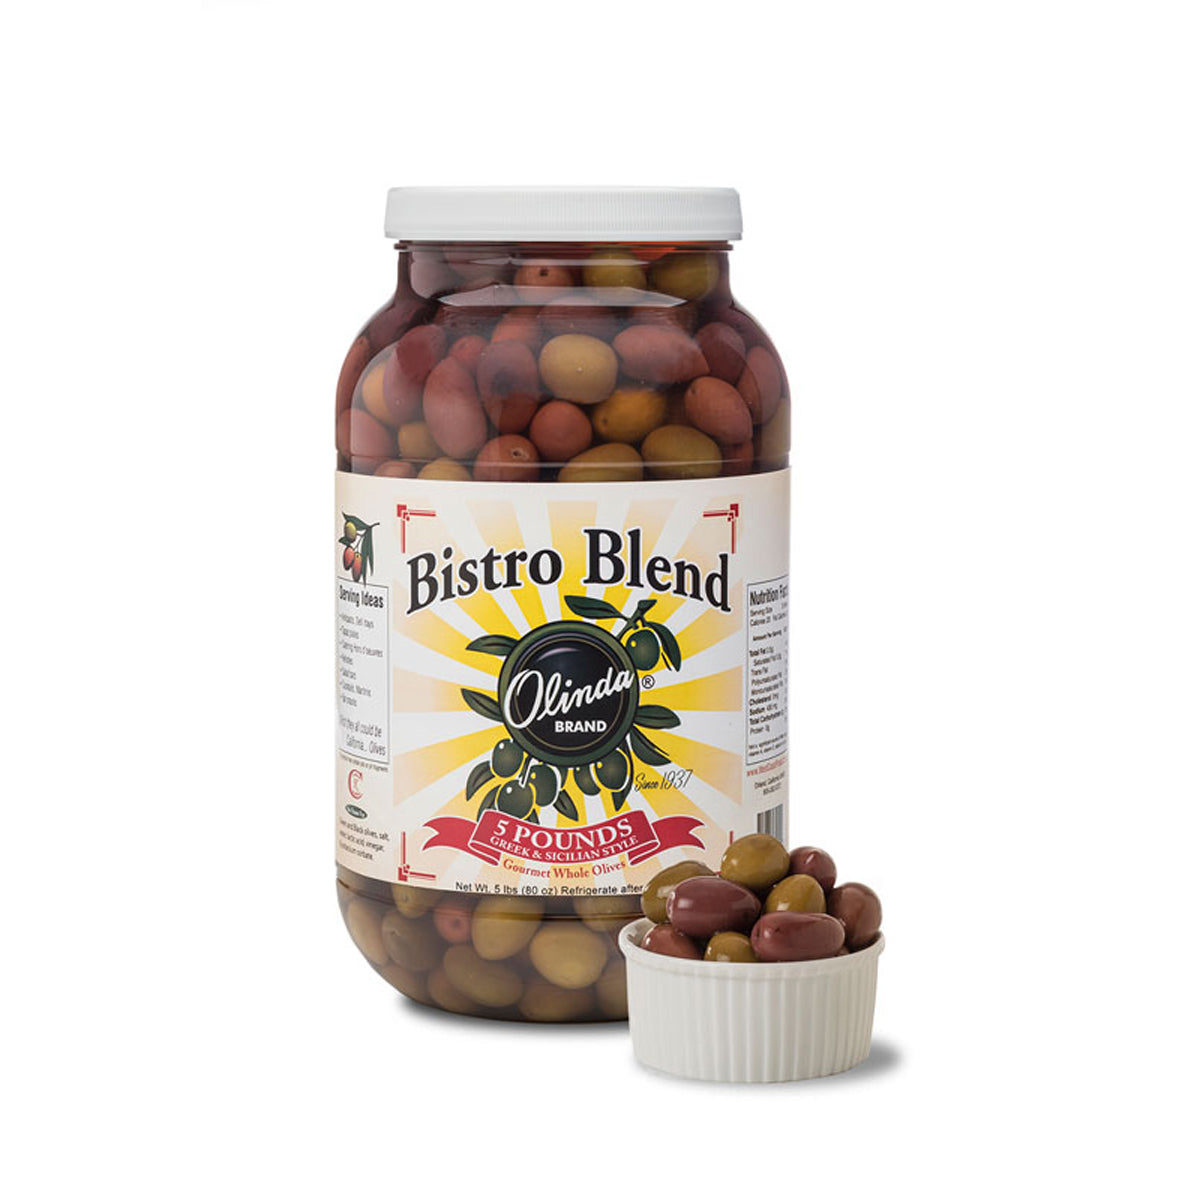 Olinda Olives Bistro Blend Olive Mix